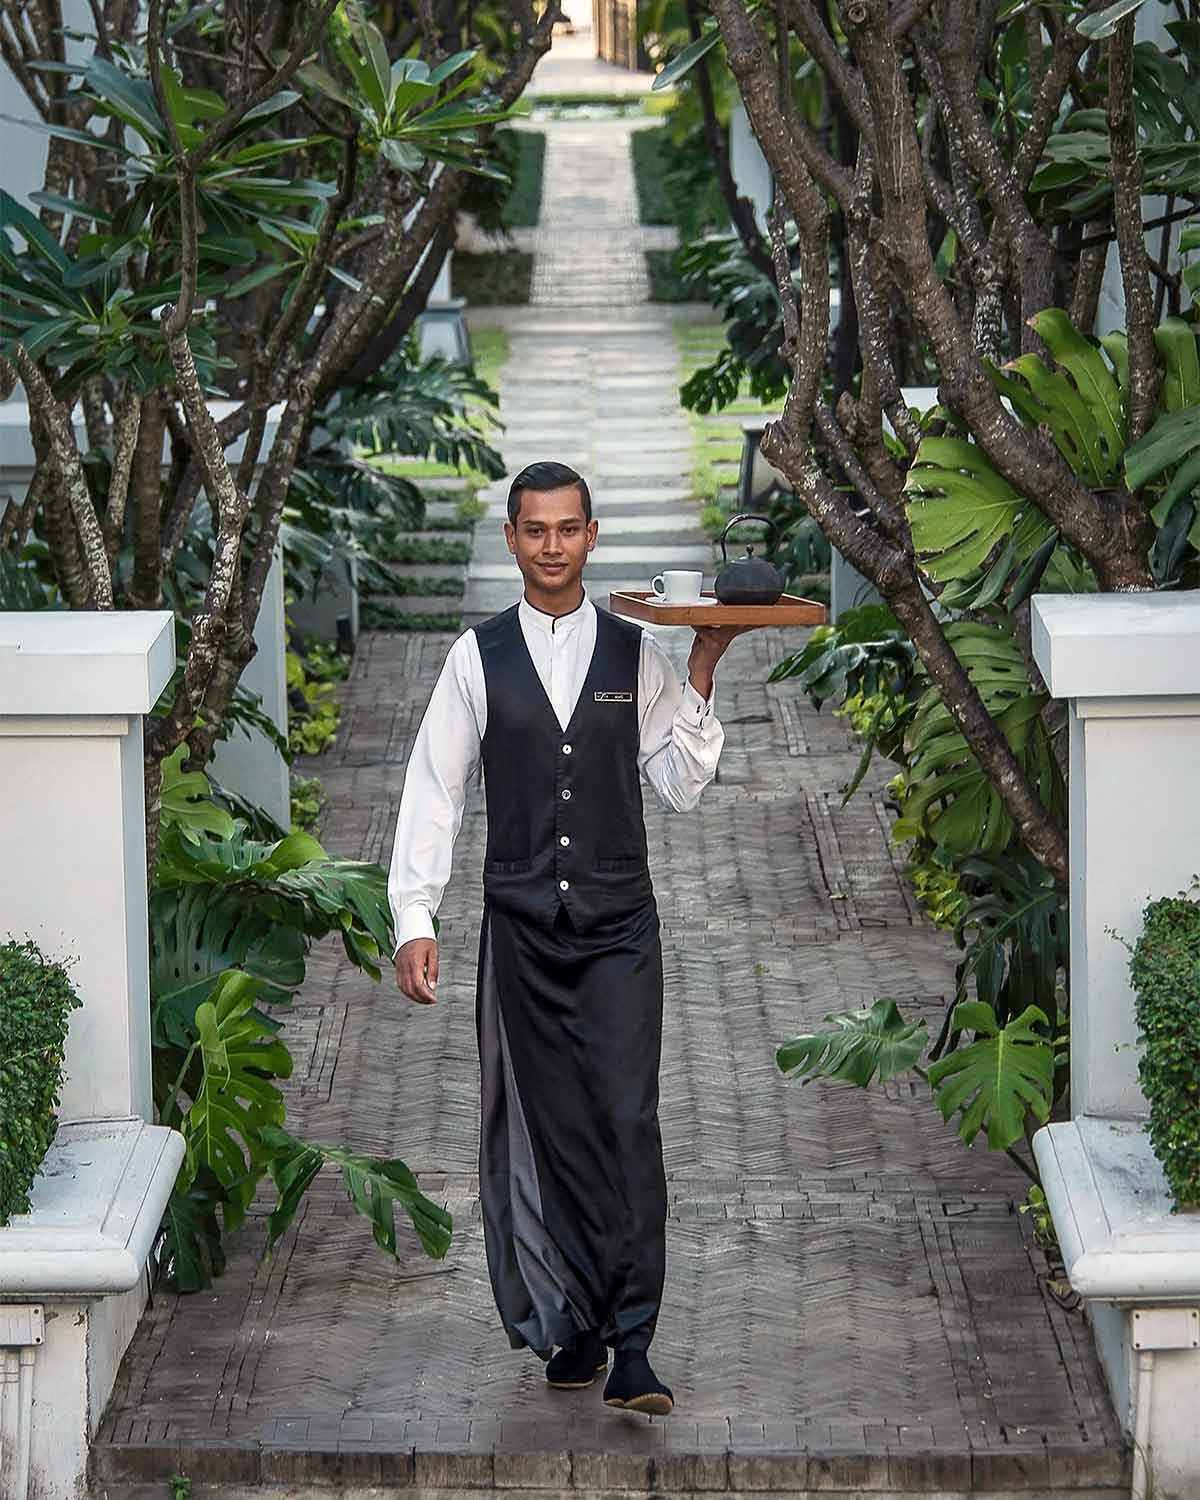 A butler at The Siam, Bangkok, Thailand